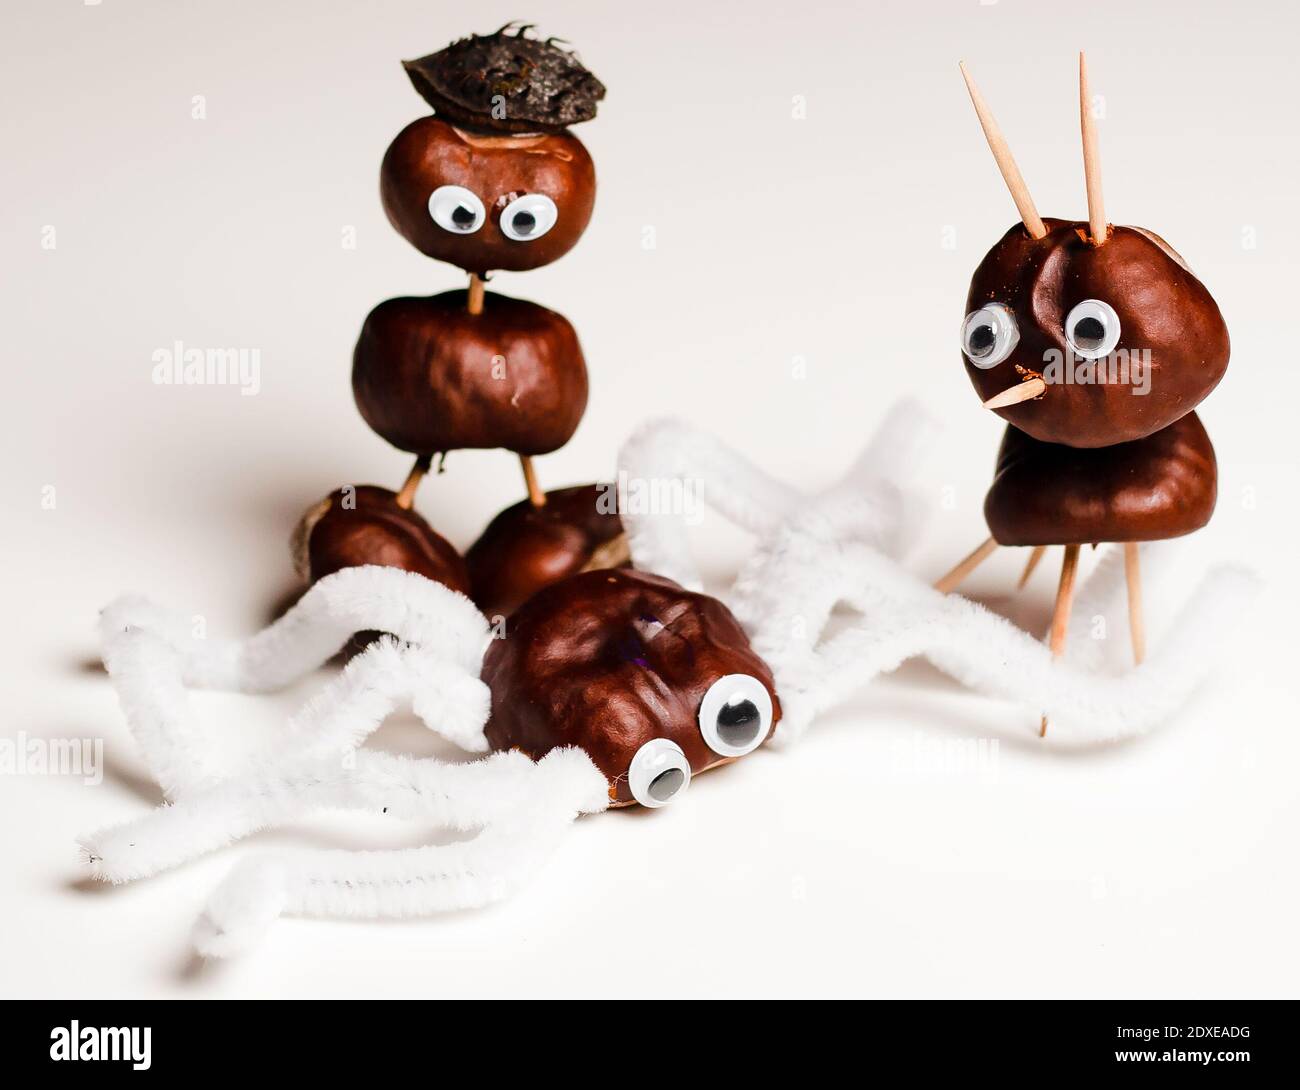 Nahaufnahme von Spielzeug mit Kastanien auf weißem Hintergrund  Stockfotografie - Alamy